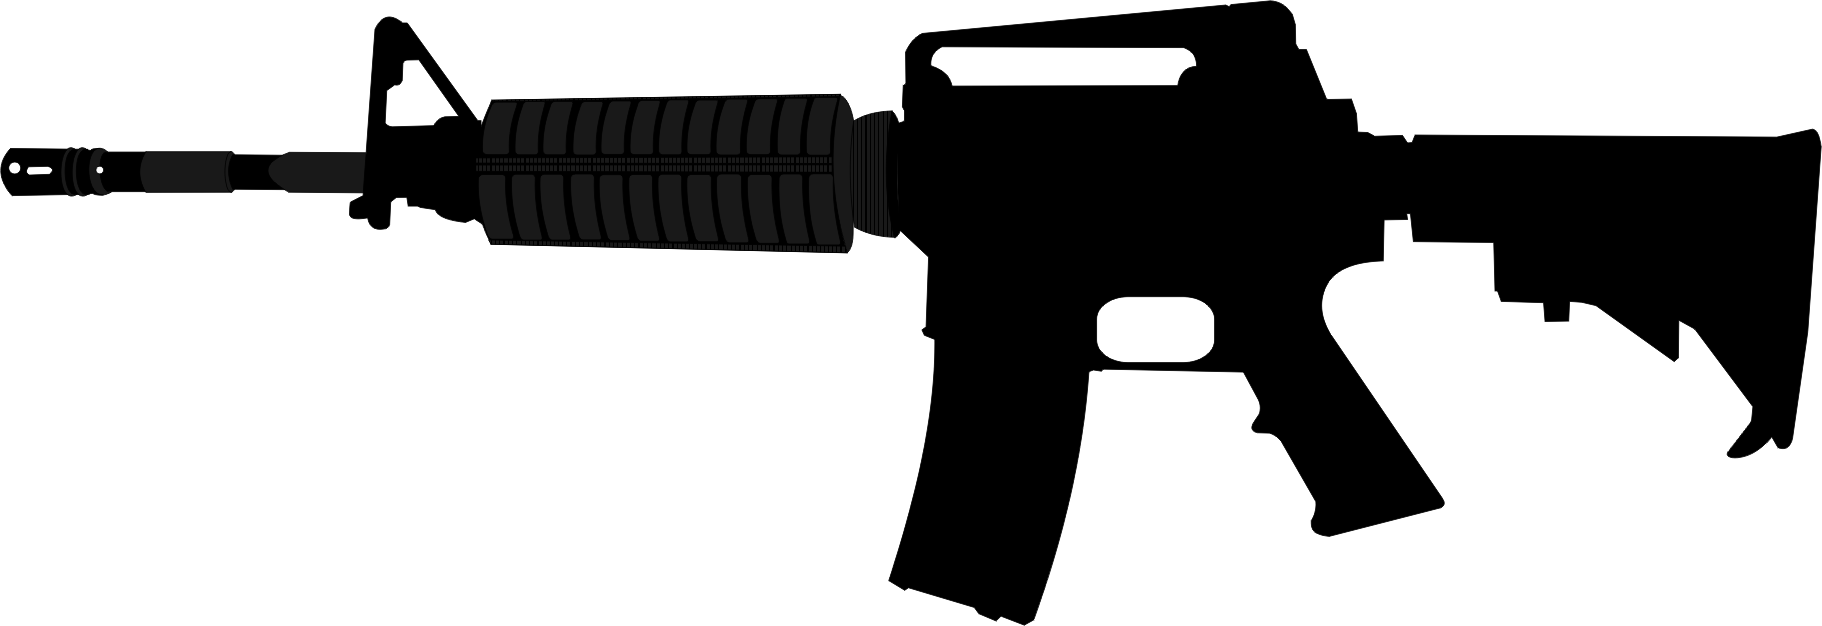 Assault rifle clipart